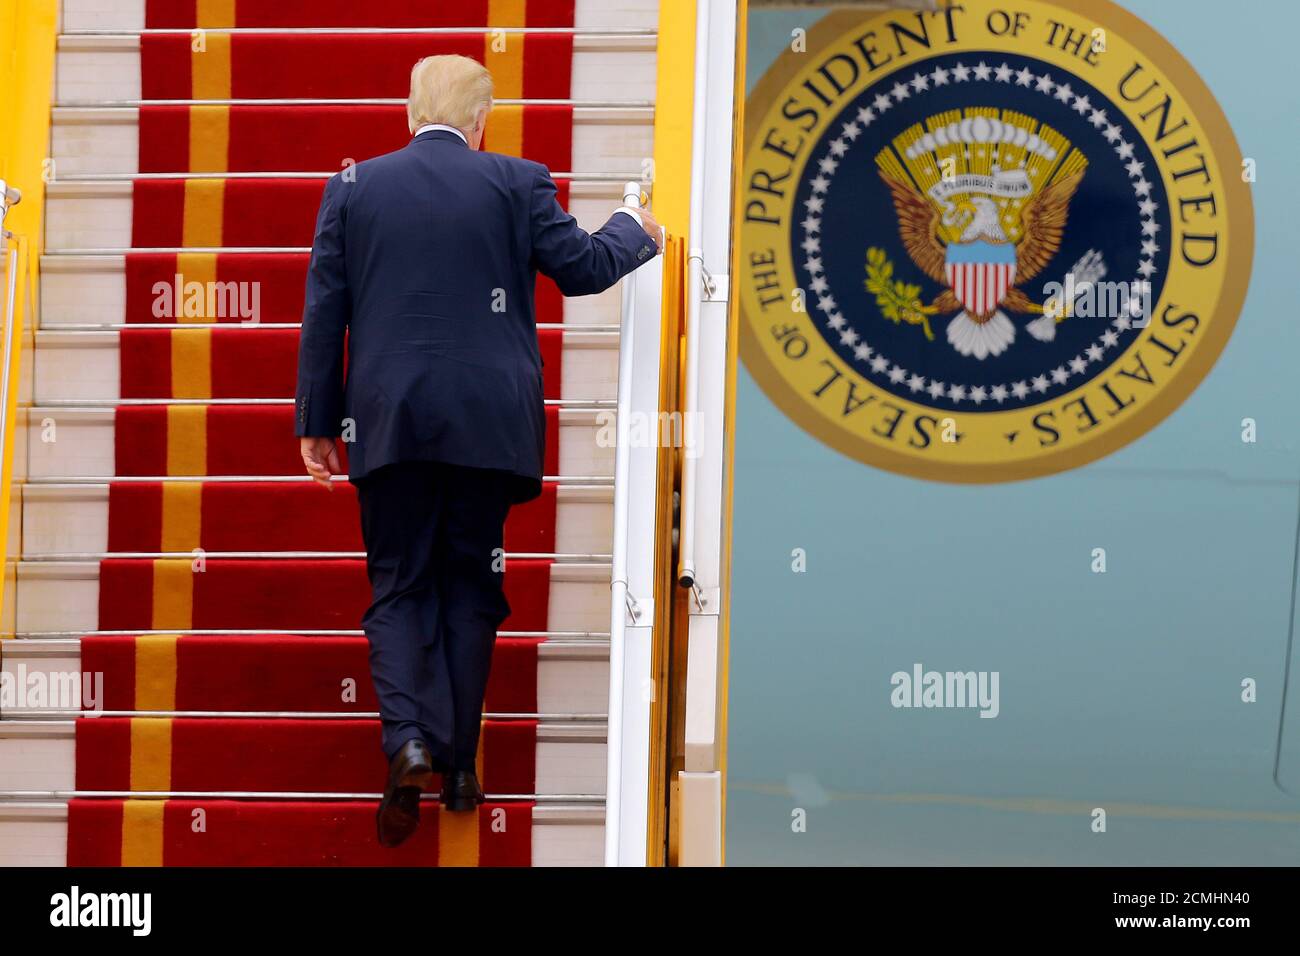 Il presidente DEGLI STATI UNITI Donald J. Trump salirà a capo dell'Air Force One prima di partire dall'aeroporto internazionale di noi Bai, ad Hanoi, in Vietnam, il 12 novembre 2017. REUTERS/Minh Hoang/Pool Foto Stock